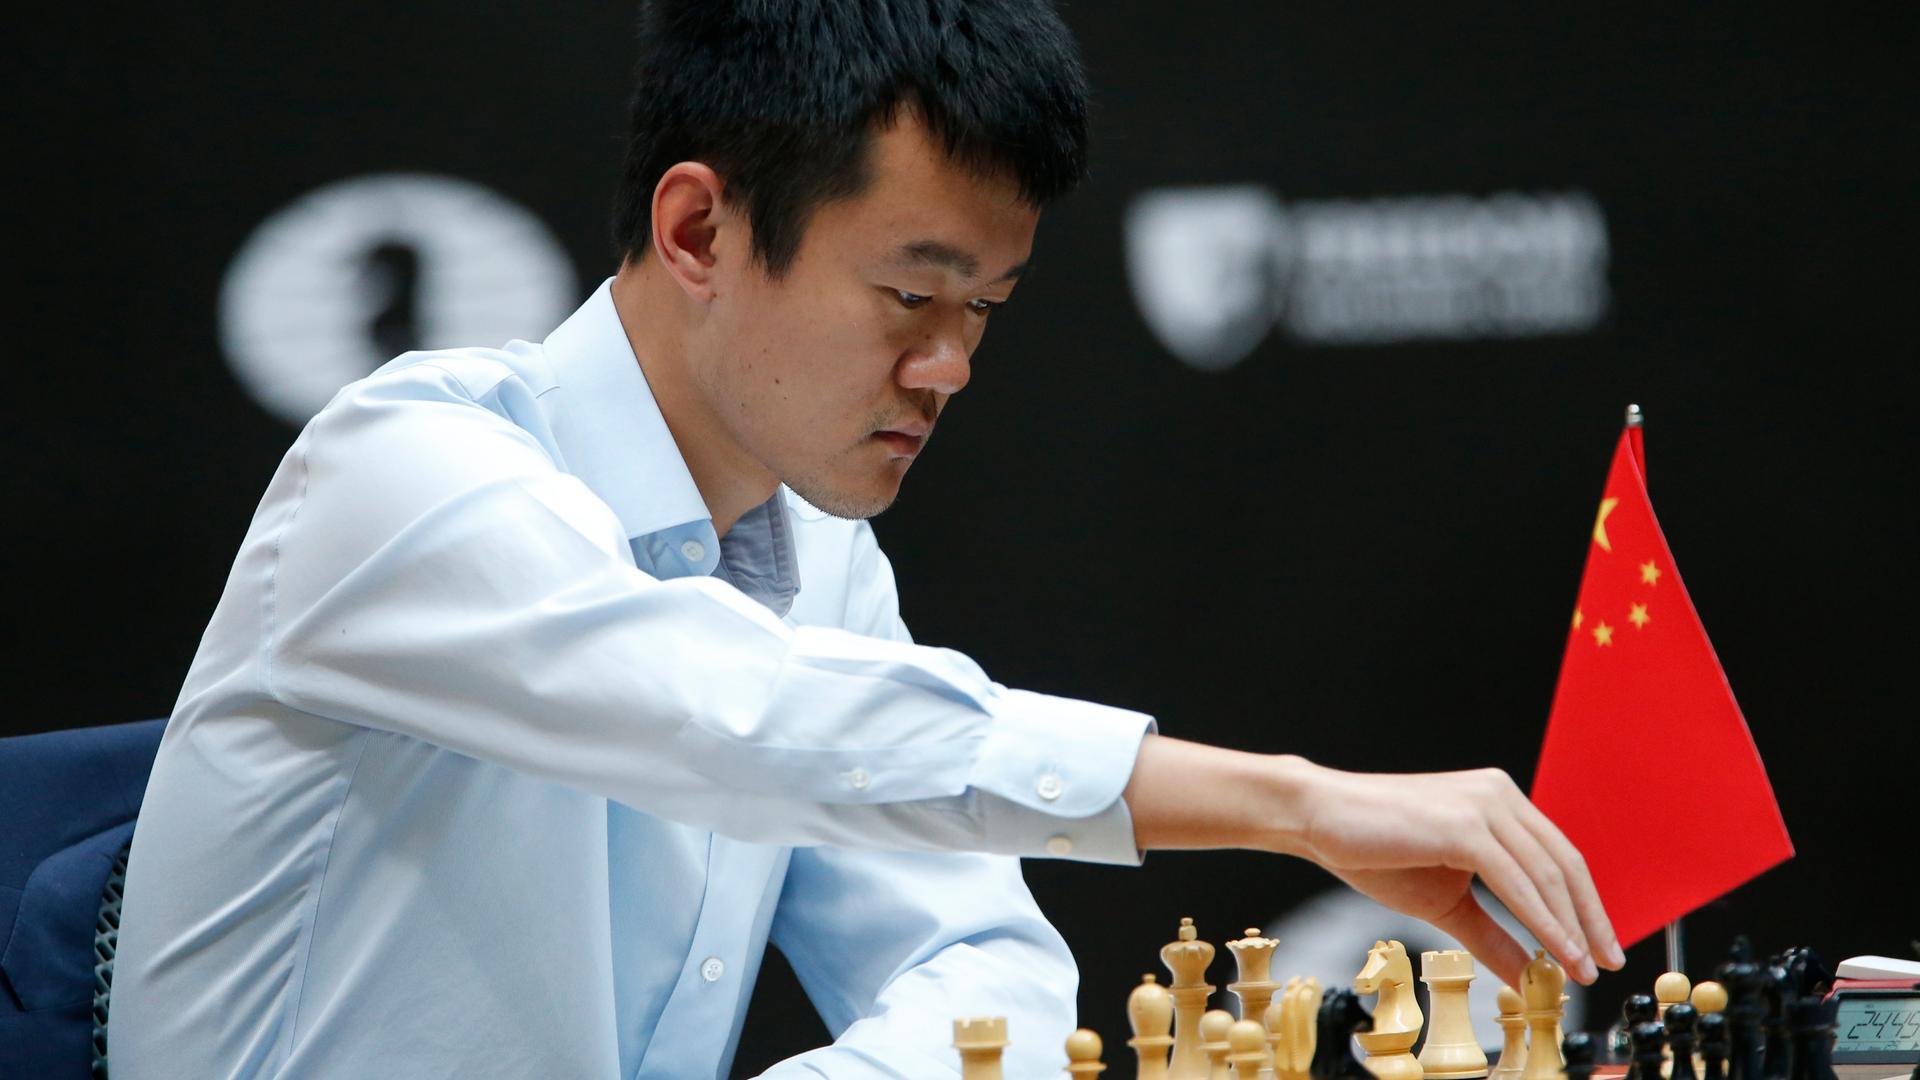 Dang Liren bei der Schach-Weltmeisterschaft in Astana während einer Partie gegen Jan Nepomnjaschtschi.